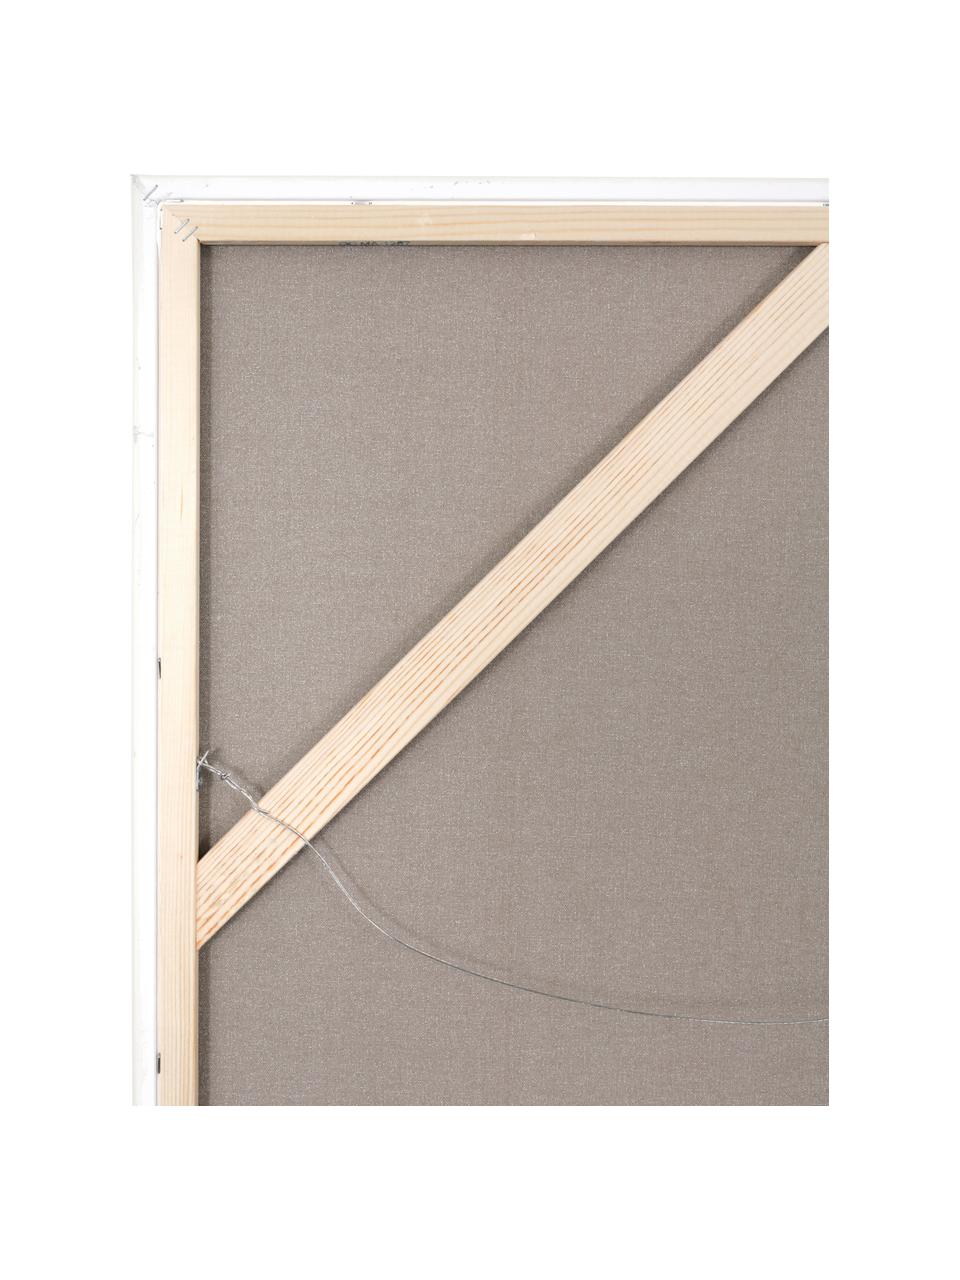 Handgemaltes Leinwandbild New Story mit Holzrahmen, Rahmen: Eichenholz, Beige, Grüntöne, B 120 x H 92 cm